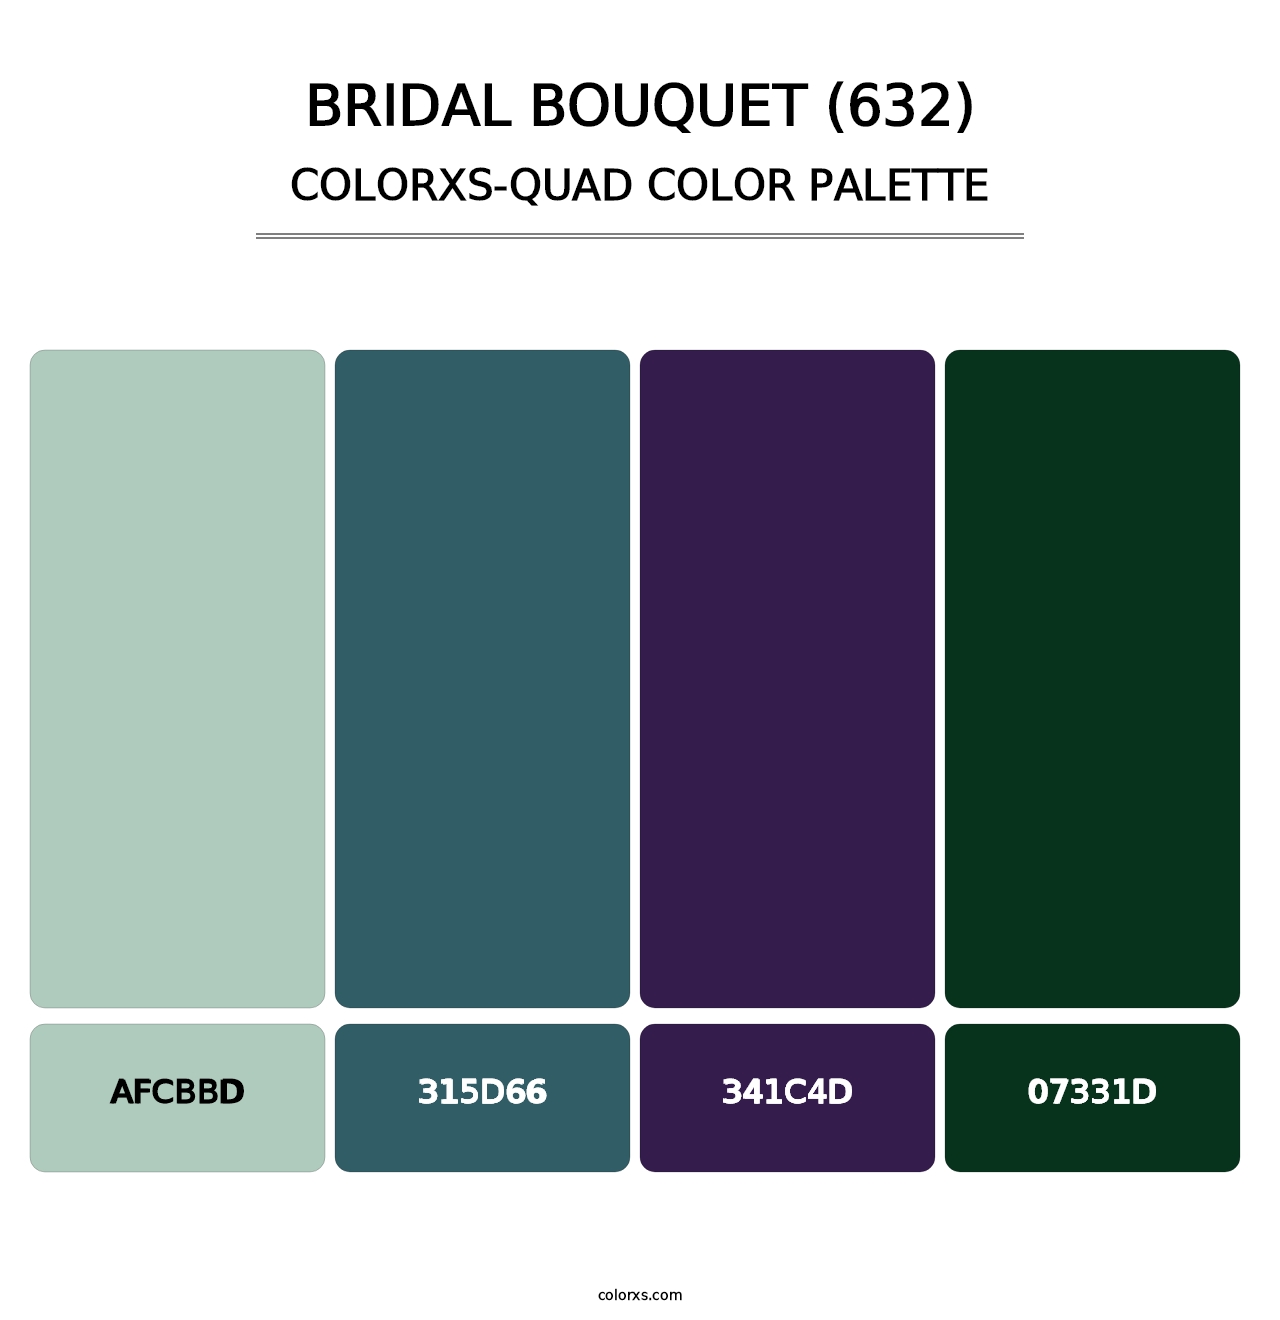 Bridal Bouquet (632) - Colorxs Quad Palette